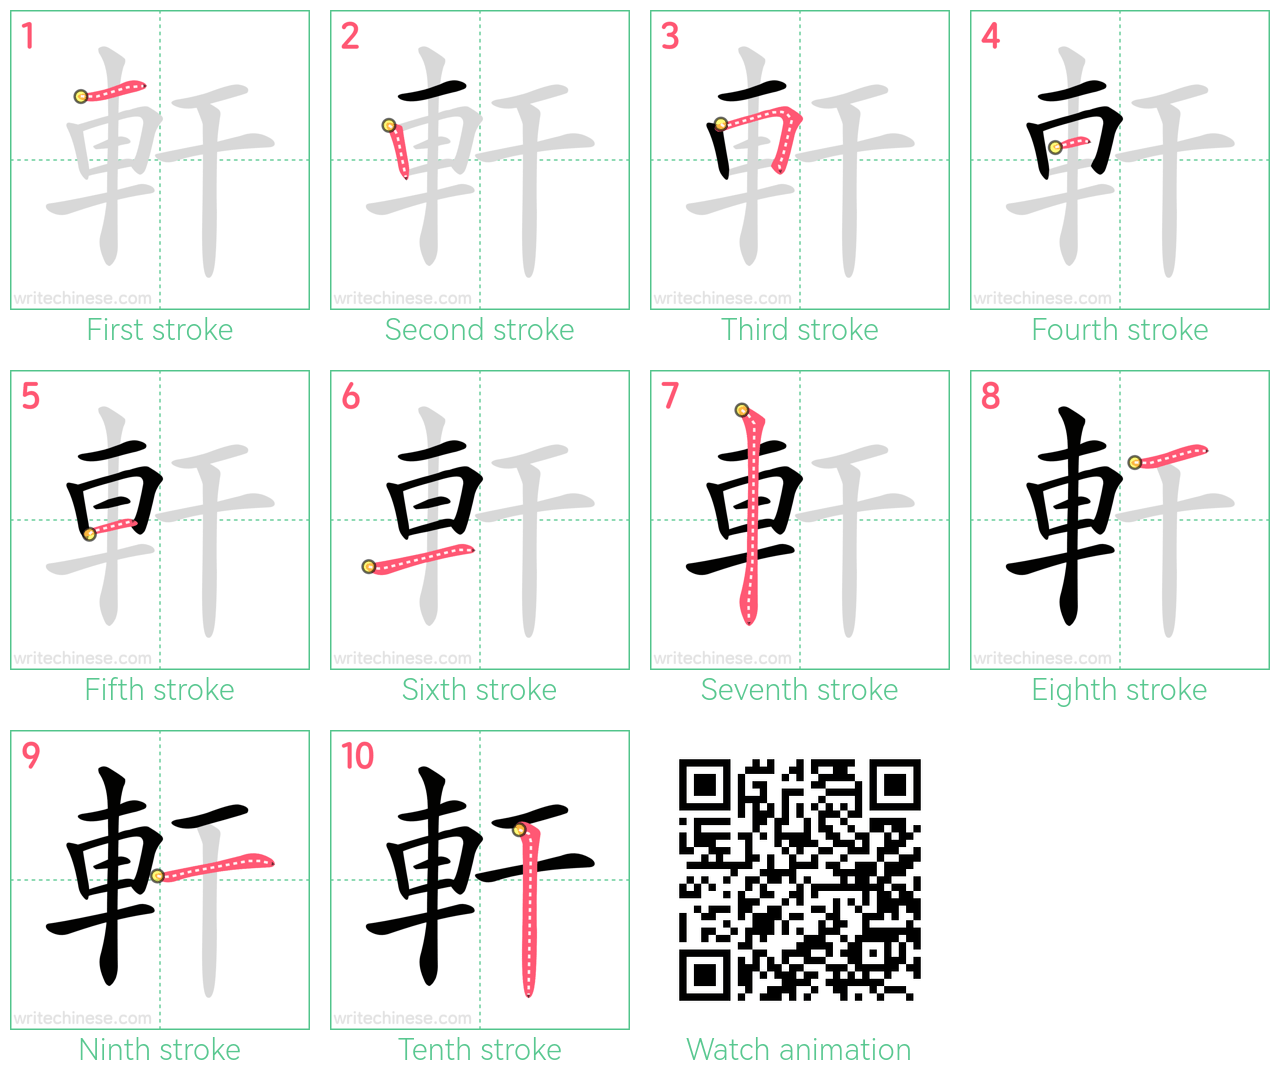 軒 step-by-step stroke order diagrams